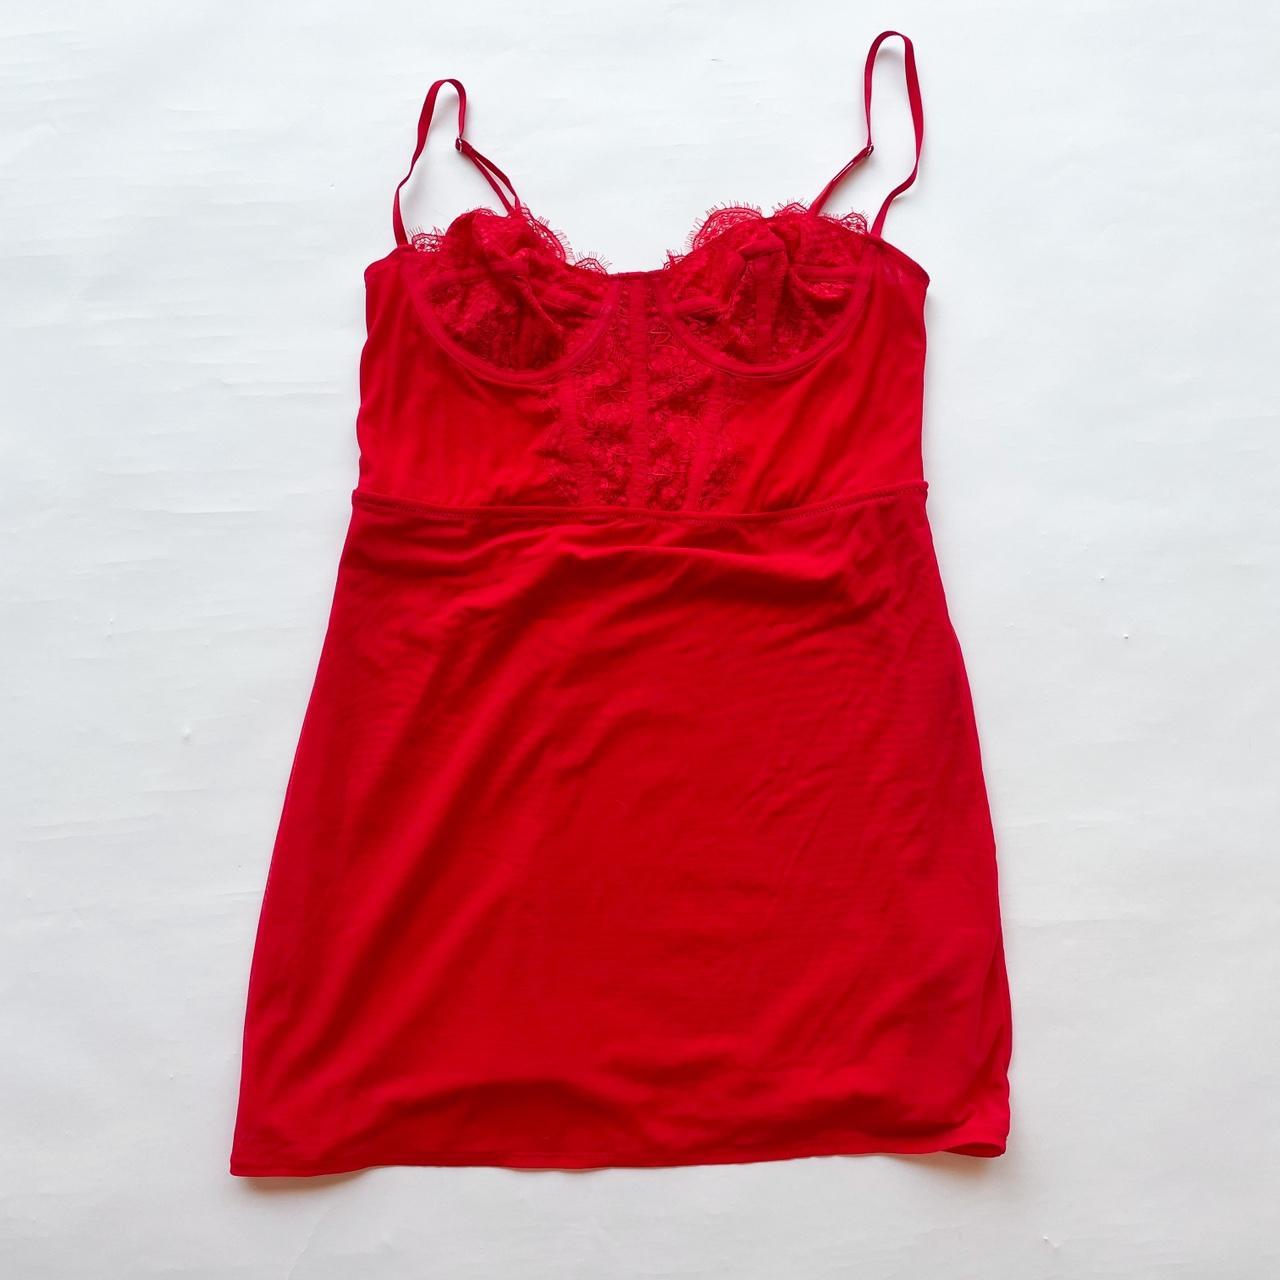 Urban corset top in red - Depop